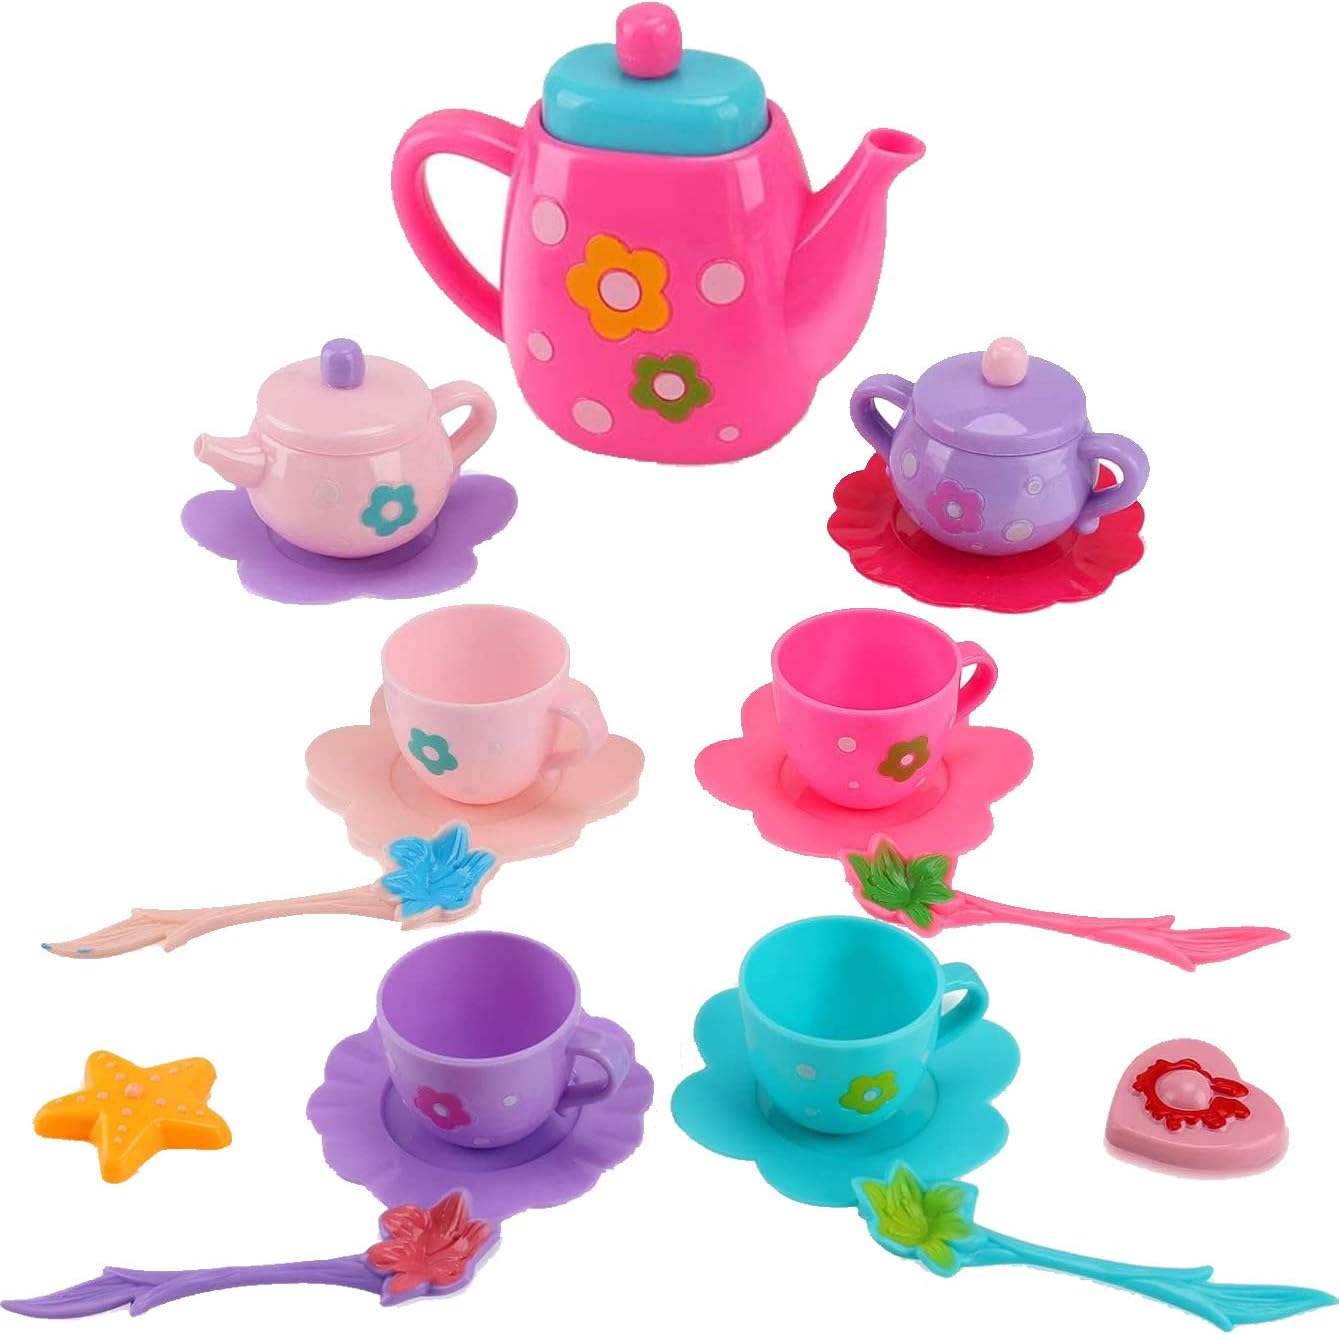 Boys Girs Pretend Play Tea Party Playset Cup Tea Pot Saucer and More  Pcs Set 